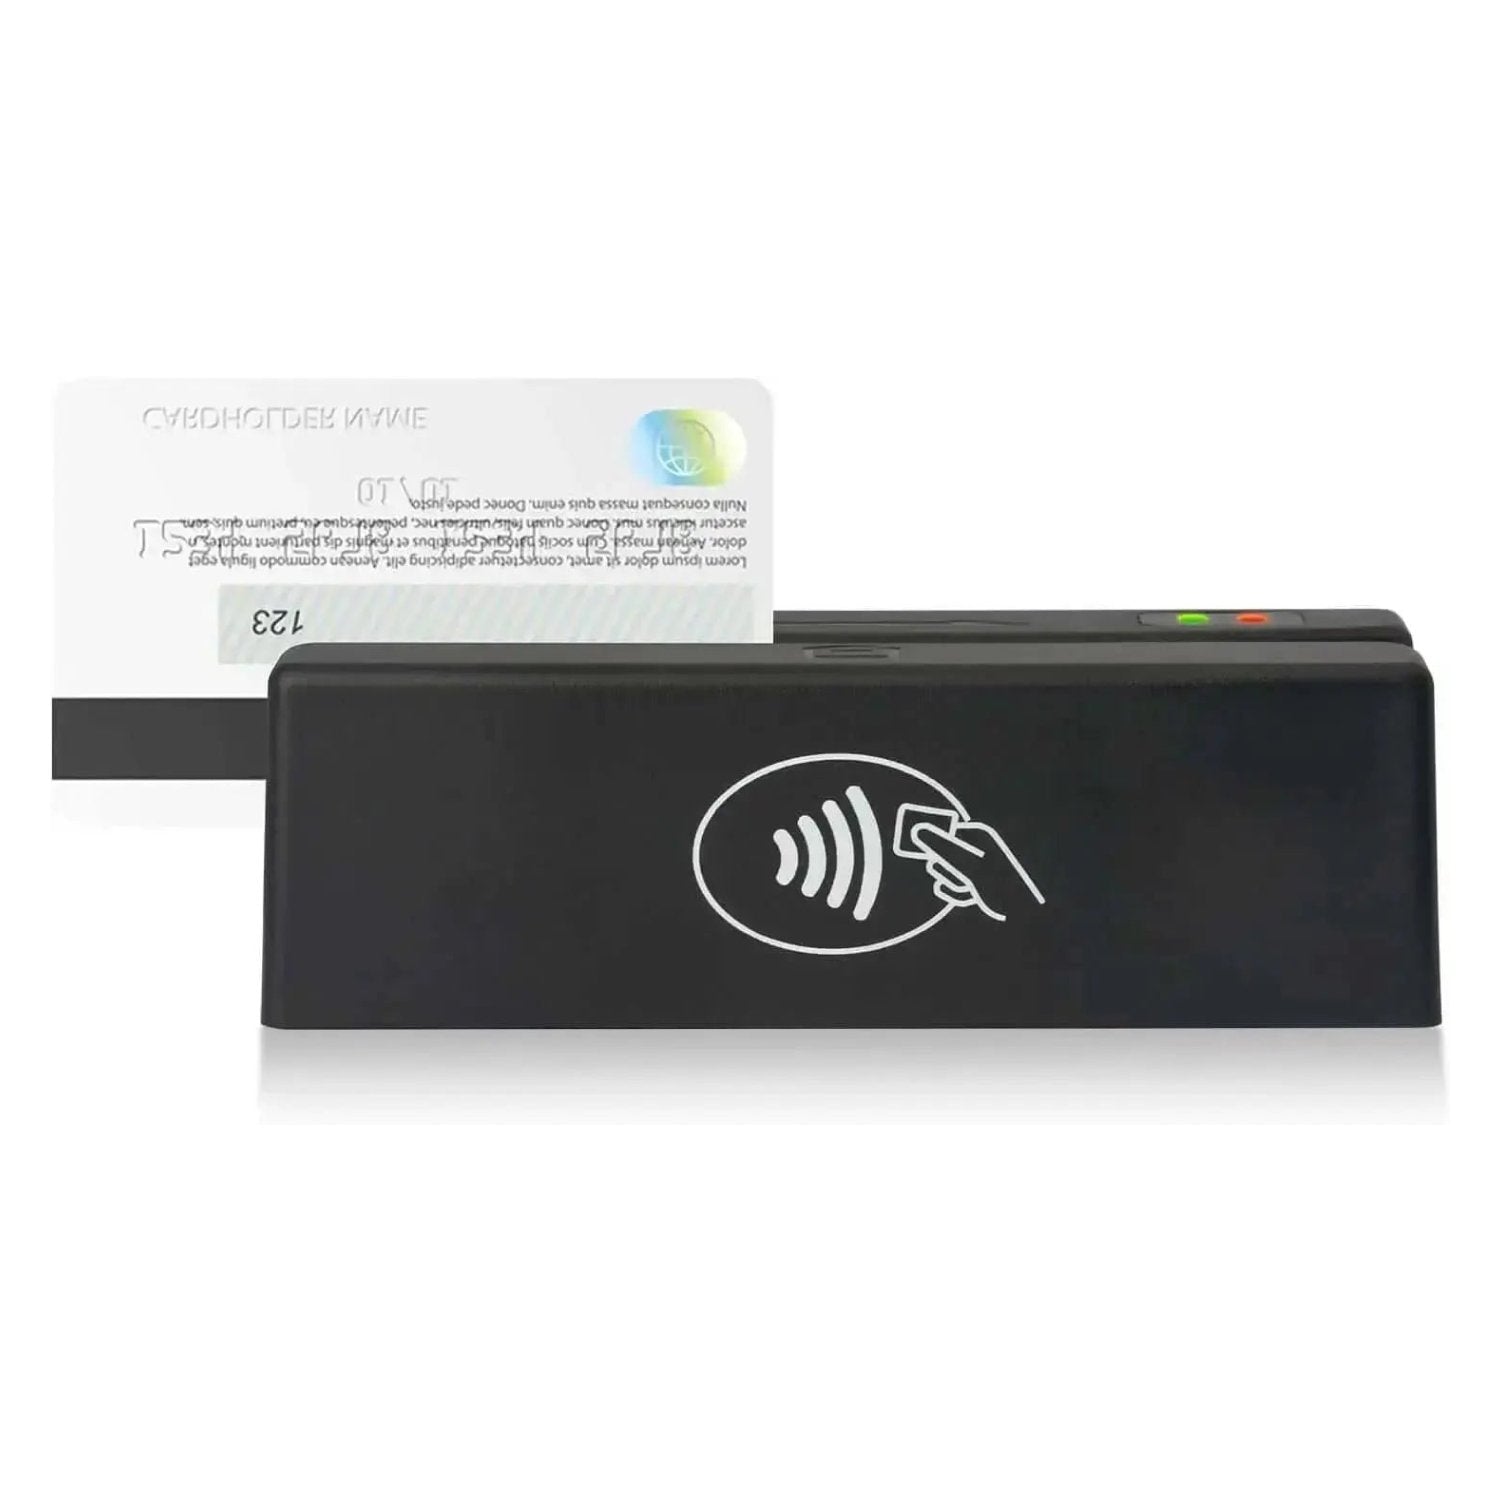 MSR98RF 13.56Mhz NFC Magnetic Credit Card Reader TagtixRFID